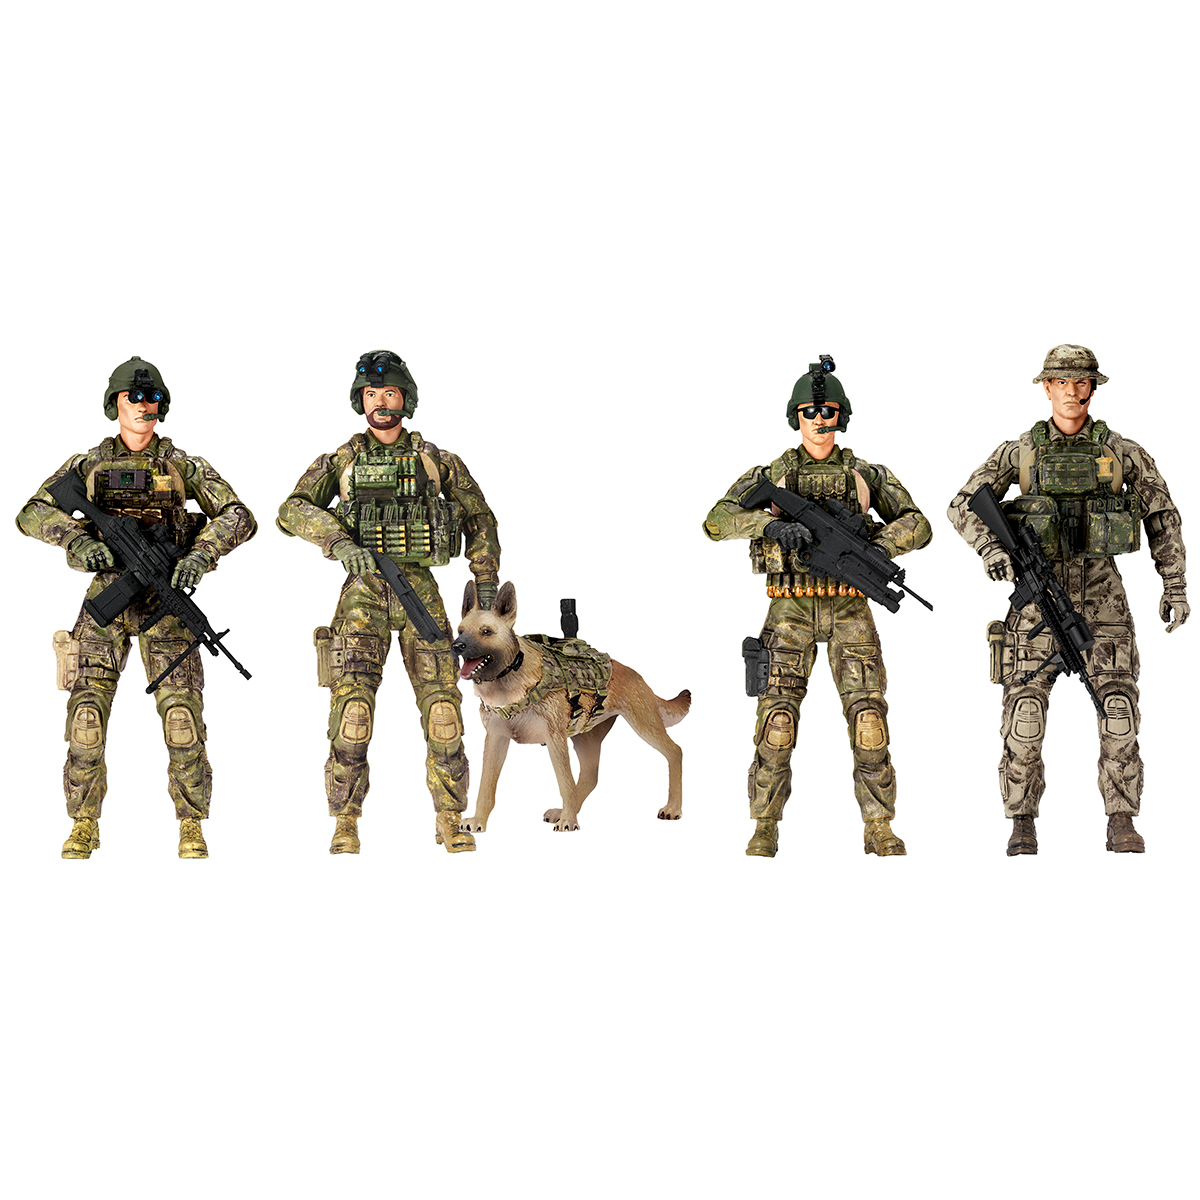 Игровой набор фигурок солдатов Elite Force Рейнджеры, 5 фигурок (101855) - фото 2